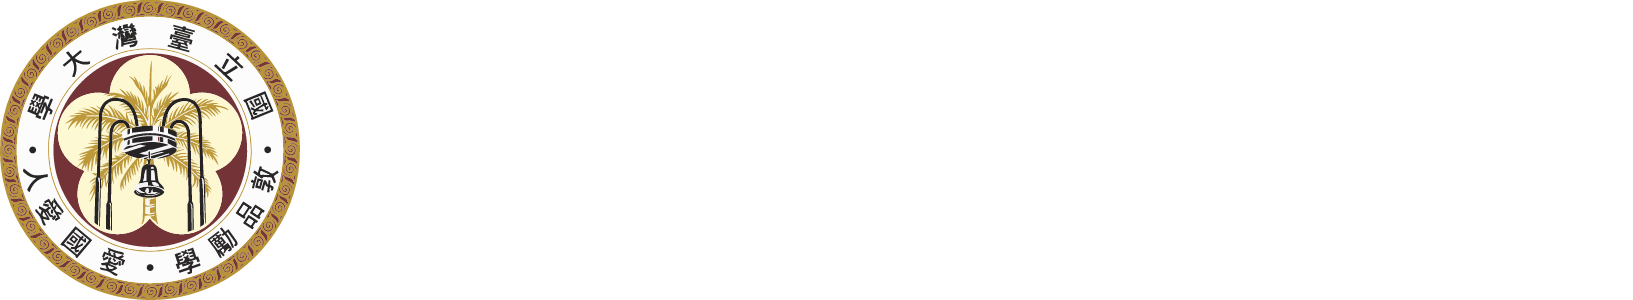 台灣大學食科所